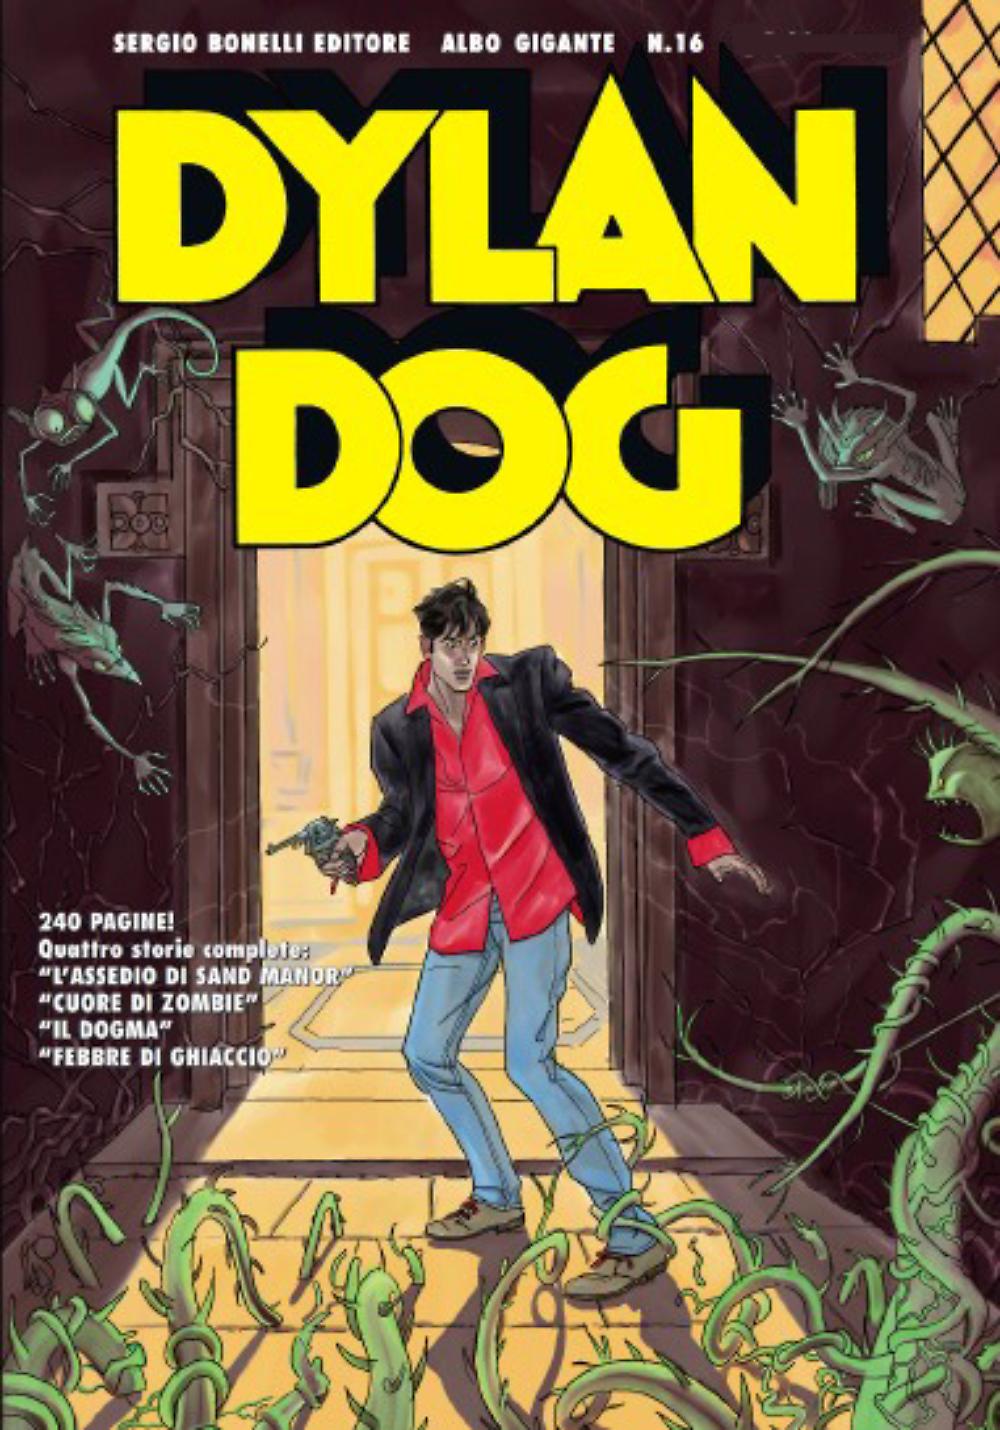 DPBOT – Fumetto – Bonelli – Dylan Dog Gigante # 16 – U...